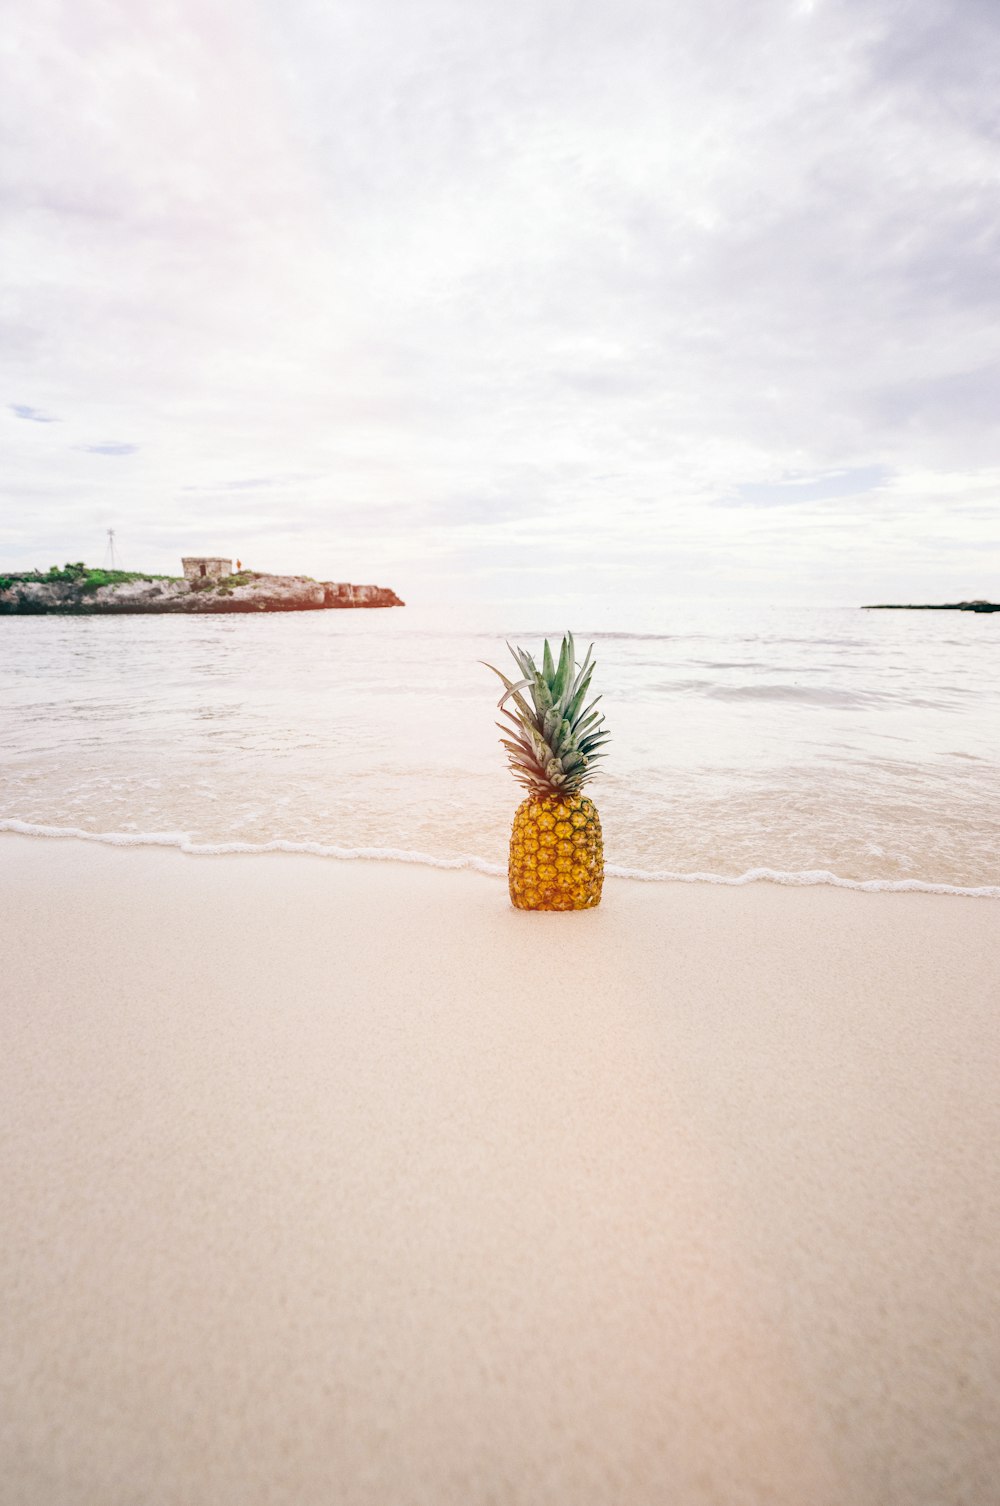 pineapple on sand near beach